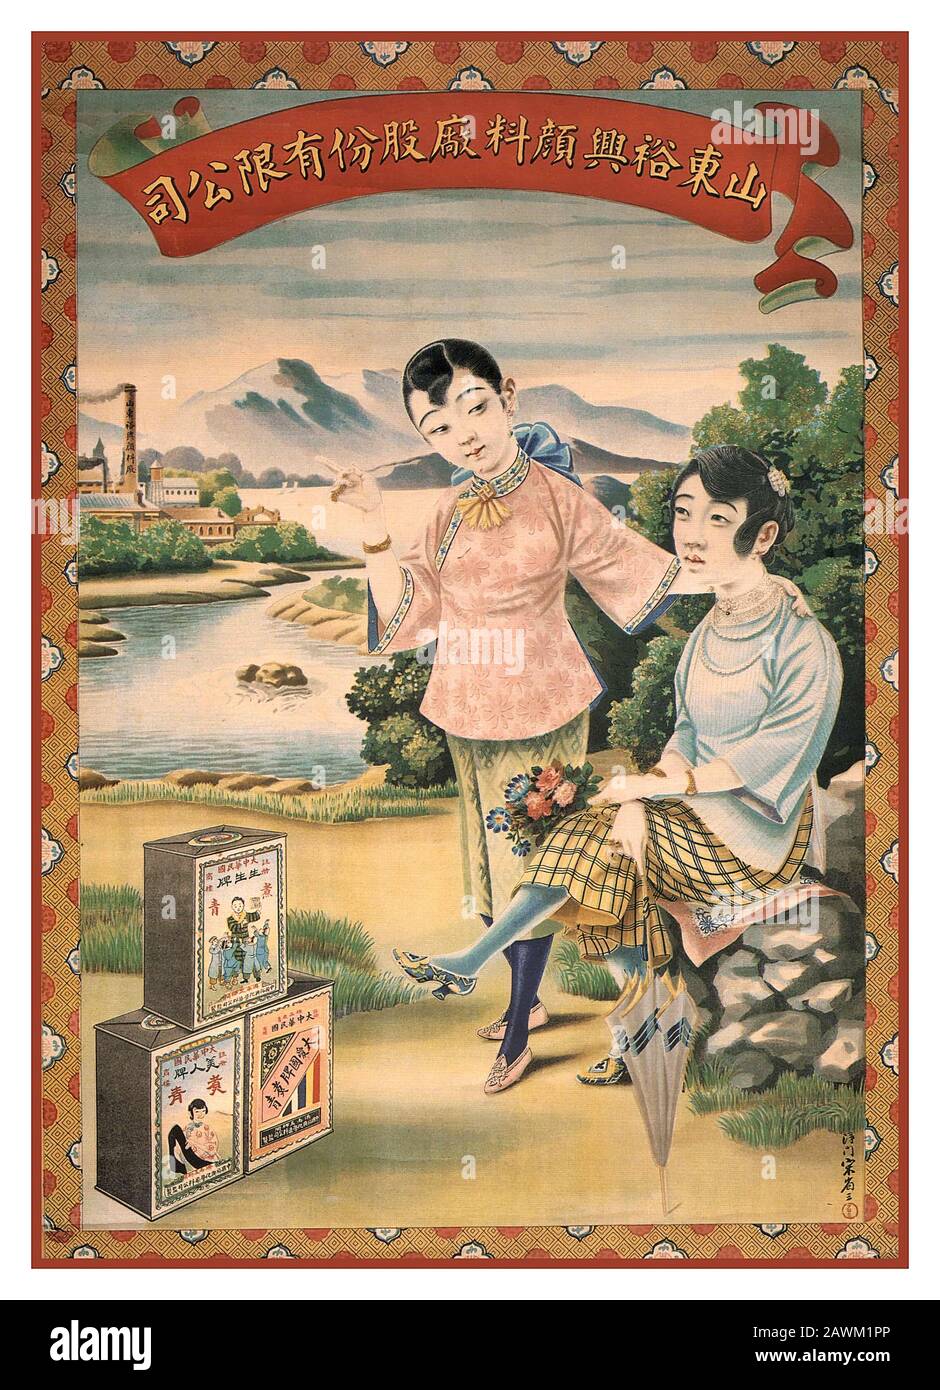 Affiche de Shanghai en chinois vintage œuvres d'art publicitaires chinoises de Yu Xing Dye Factory de la province de Shandong. Affiches Chinoises De Shanghai. Banque D'Images